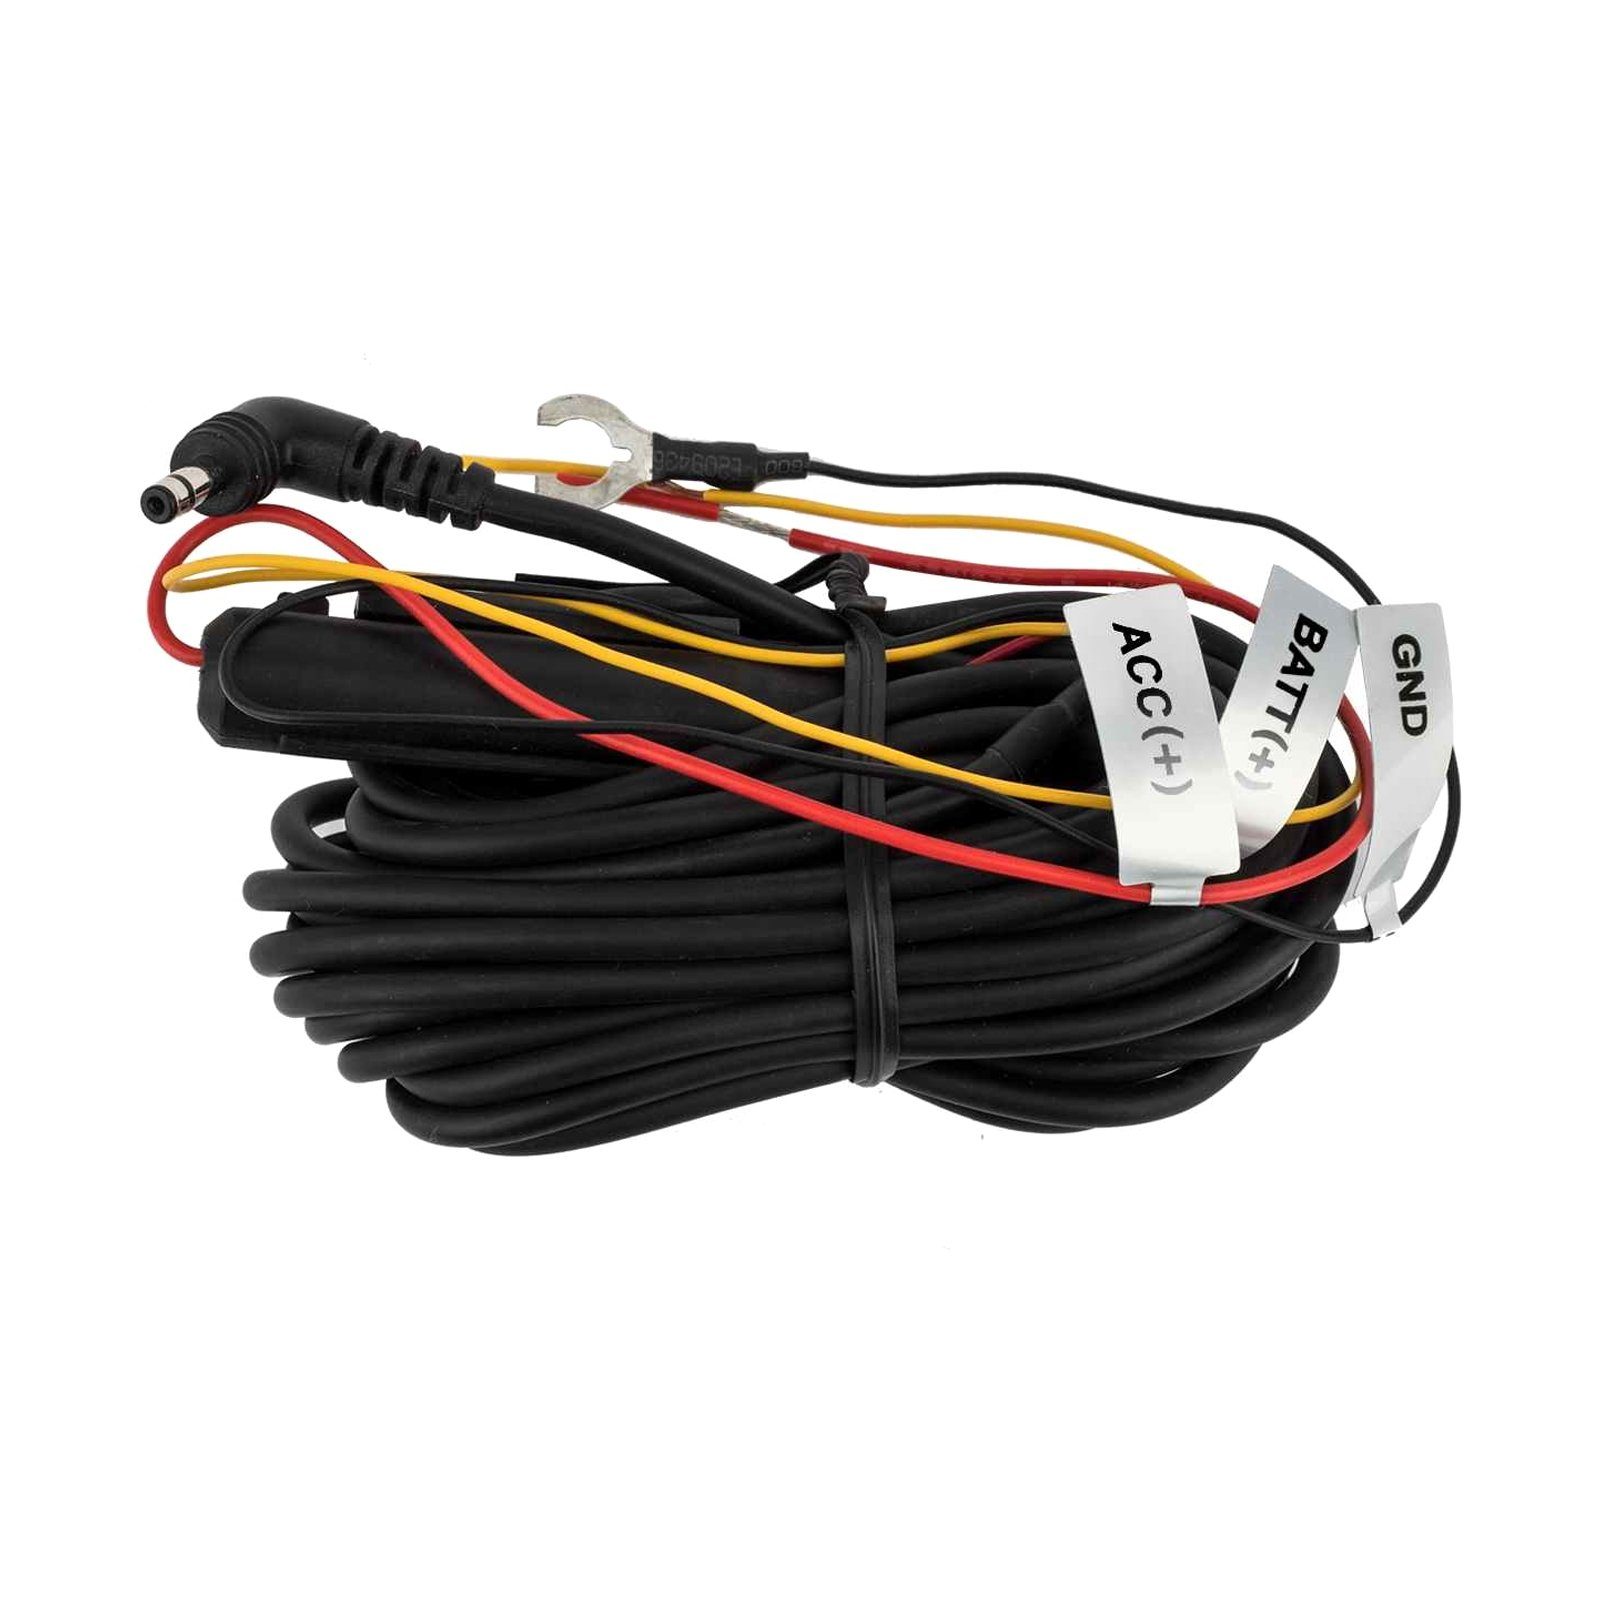 Kabel Se 4,5m Hardwire BlackVue für Power CH-3P1 BlackVue Dashcam X